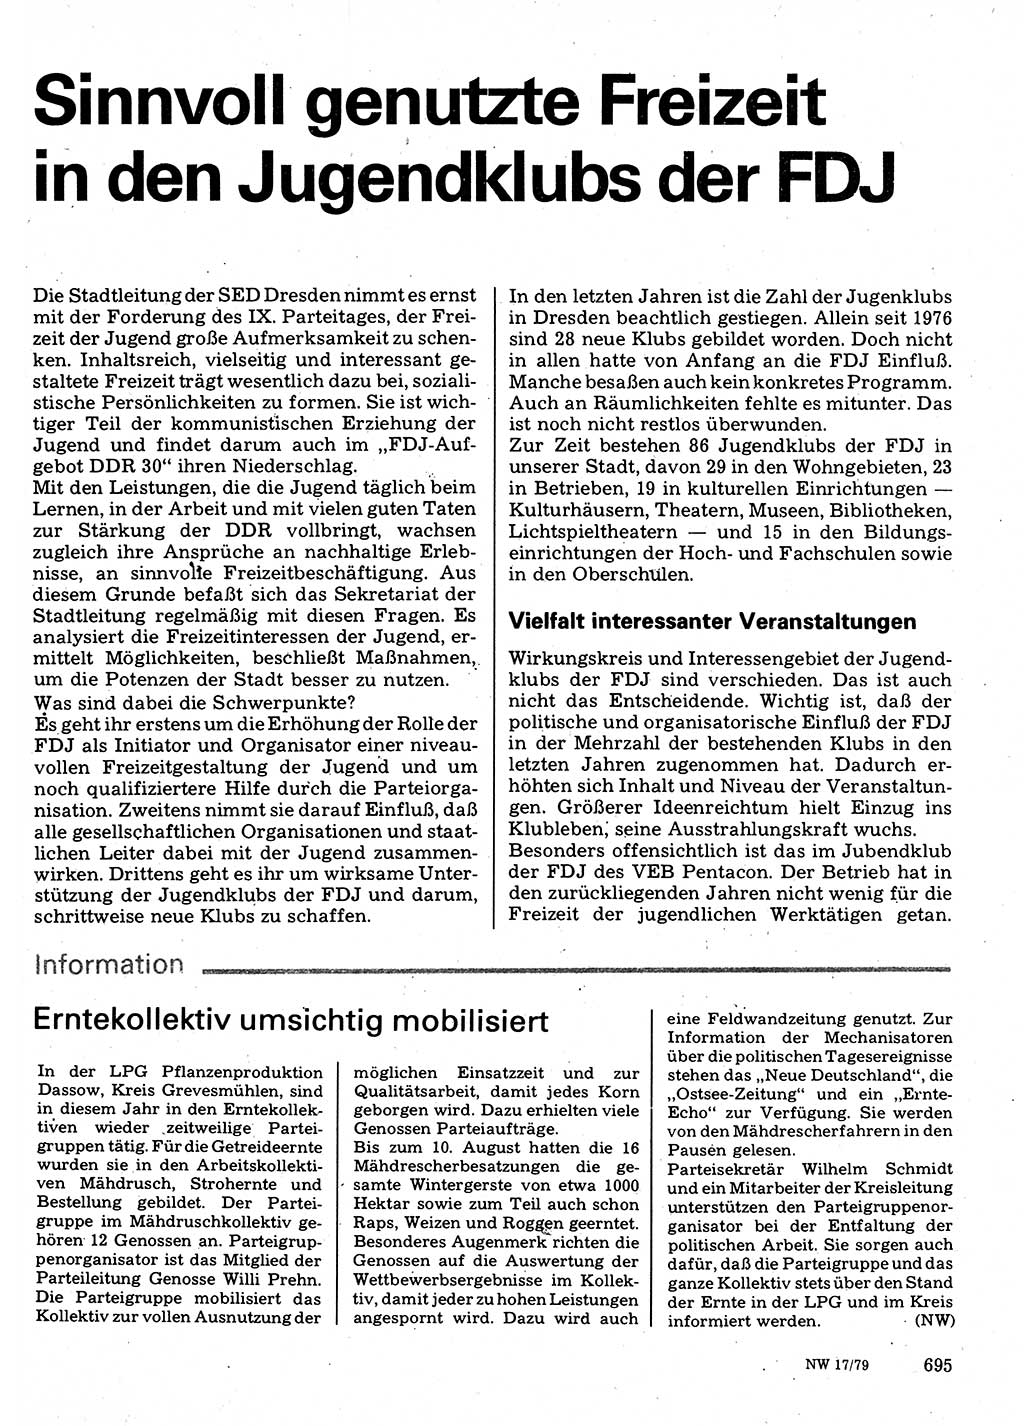 Neuer Weg (NW), Organ des Zentralkomitees (ZK) der SED (Sozialistische Einheitspartei Deutschlands) für Fragen des Parteilebens, 34. Jahrgang [Deutsche Demokratische Republik (DDR)] 1979, Seite 695 (NW ZK SED DDR 1979, S. 695)